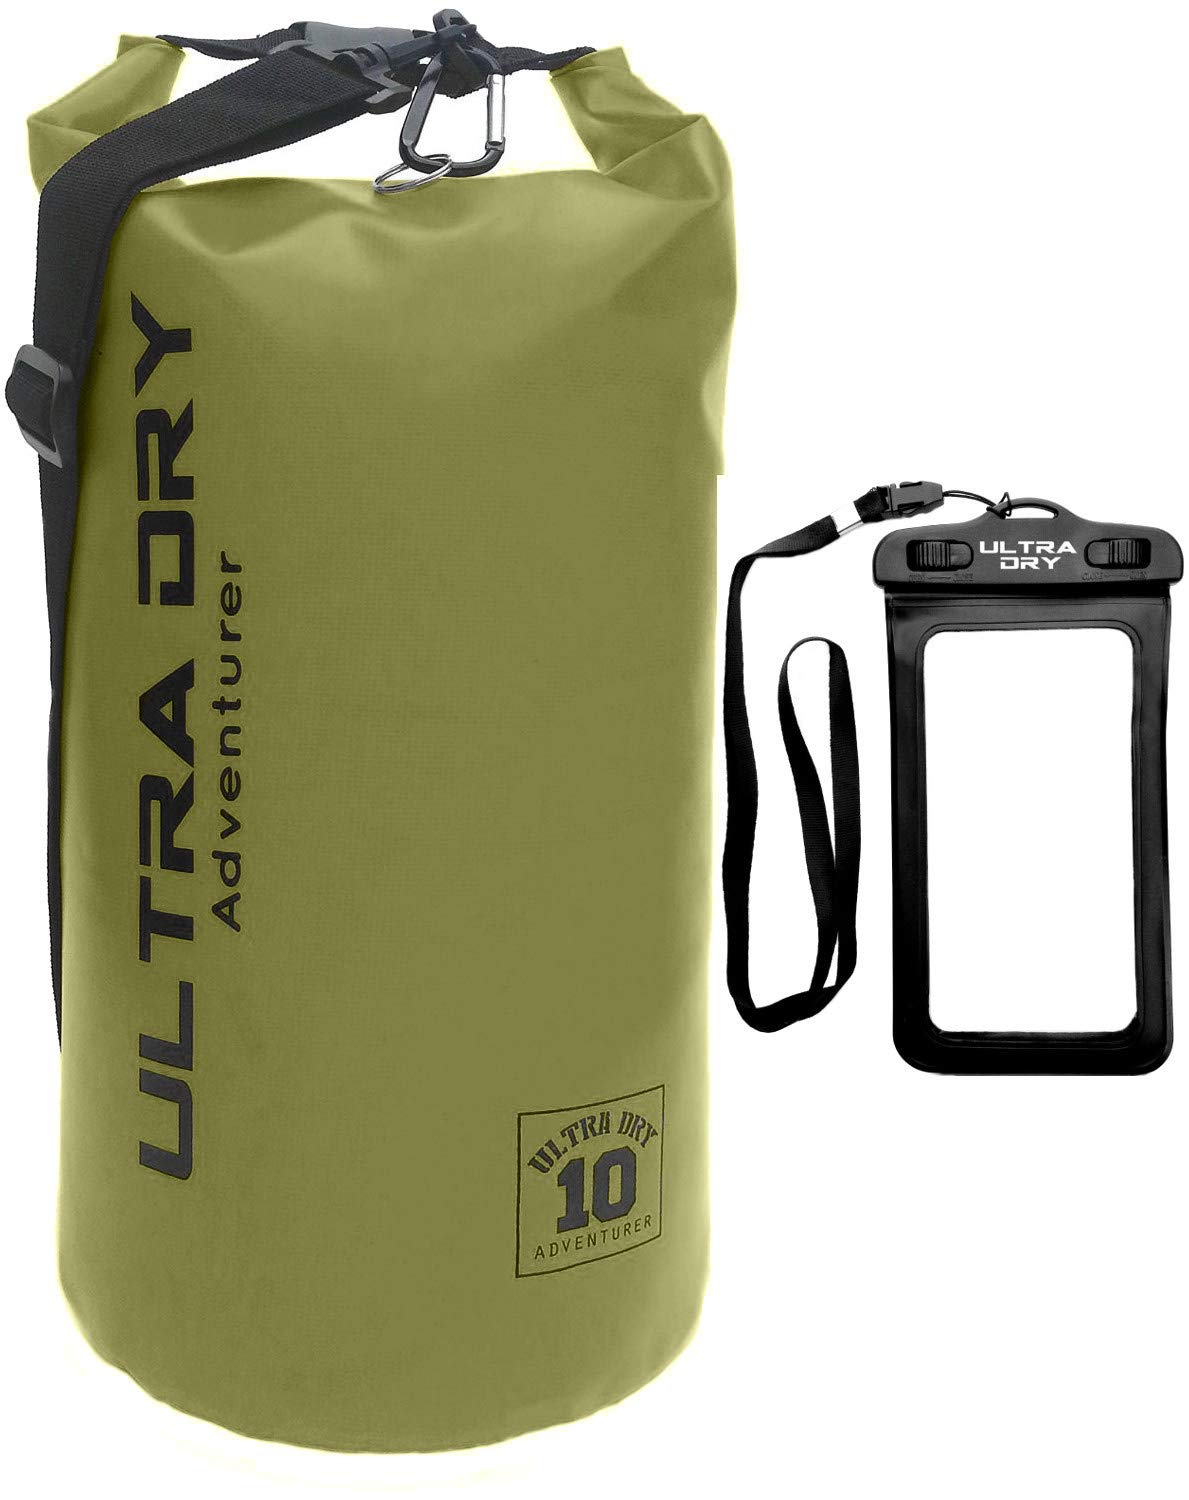 Ultra Dry Adventurer Premium wasserdichte Tasche, Sack mit Handy-Trockentasche und langem, verstellbarem Schultergurt, ideal für Kajakfahren/Bootfahren/Kanufahren/Rafting/Schwimmen (Grün, 30 Liter)